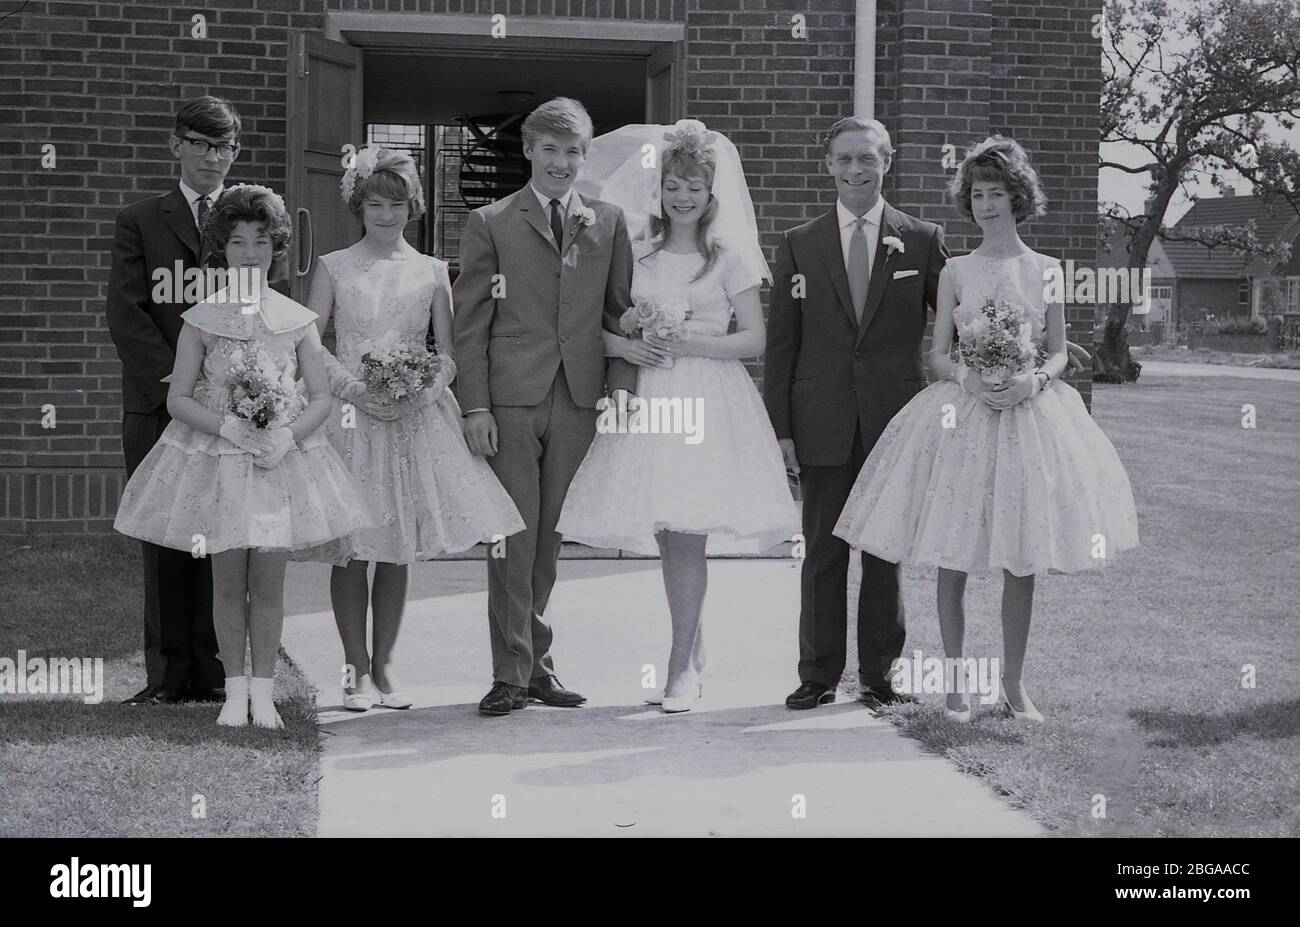 1960, historique, photo de groupe montrant des invités de mariage avec une épouse 'adolescente' dans sa robe de mariage avec voile et groom de mariée dans un costume de trois boutons de l'époque, debout ensemble à l'extérieur de l'entrée d'un bâtiment moderne d'église, Angleterre, Royaume-Uni. Banque D'Images